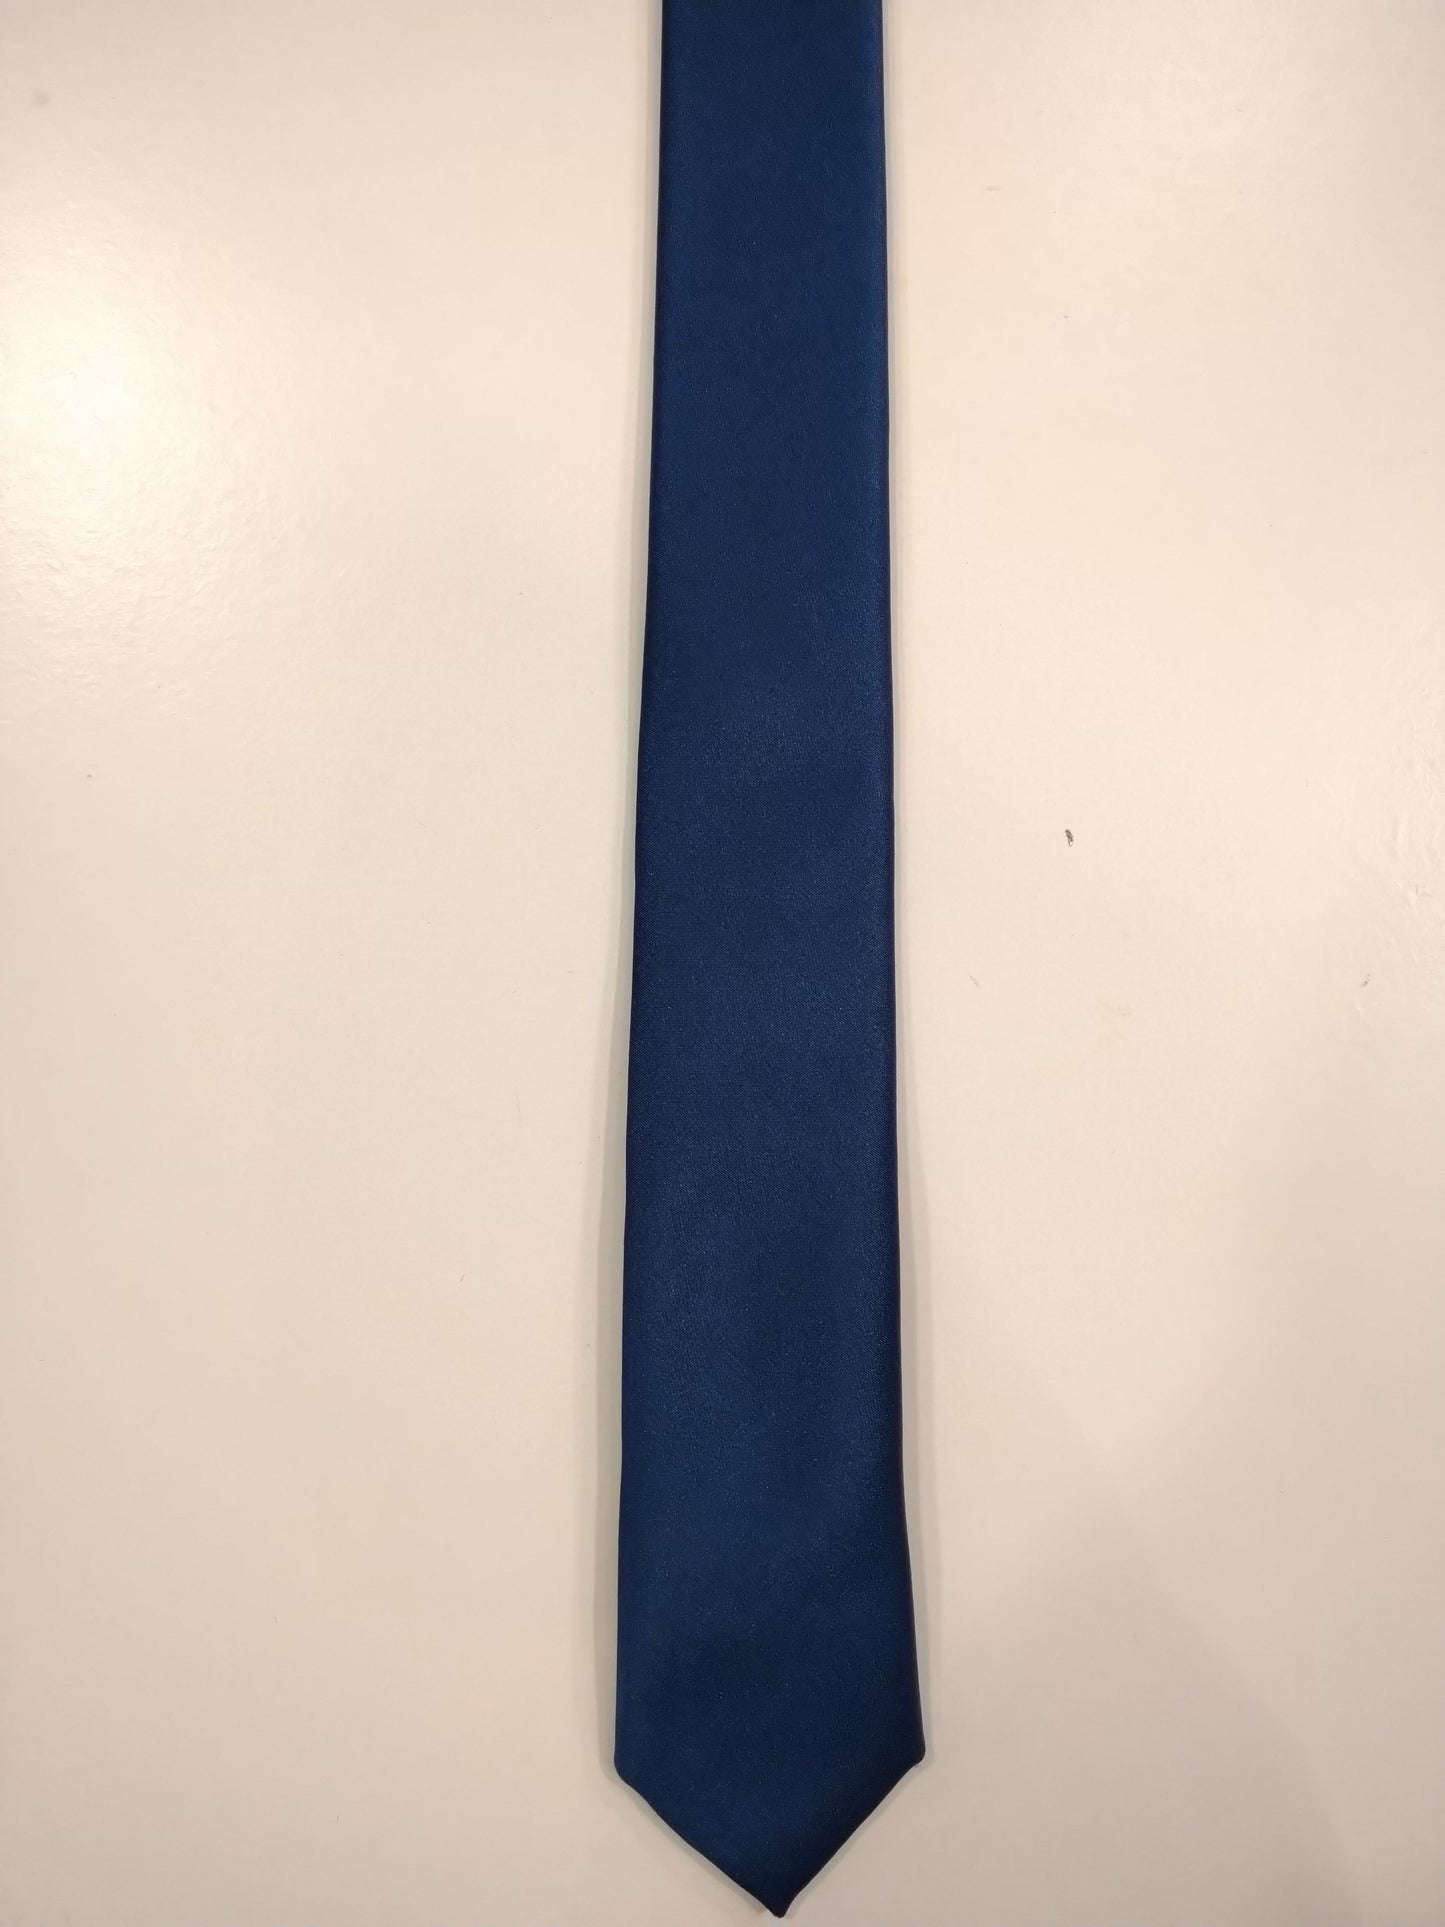 Cravate en polyester doux vintage extra étroite. Bleu brillant.